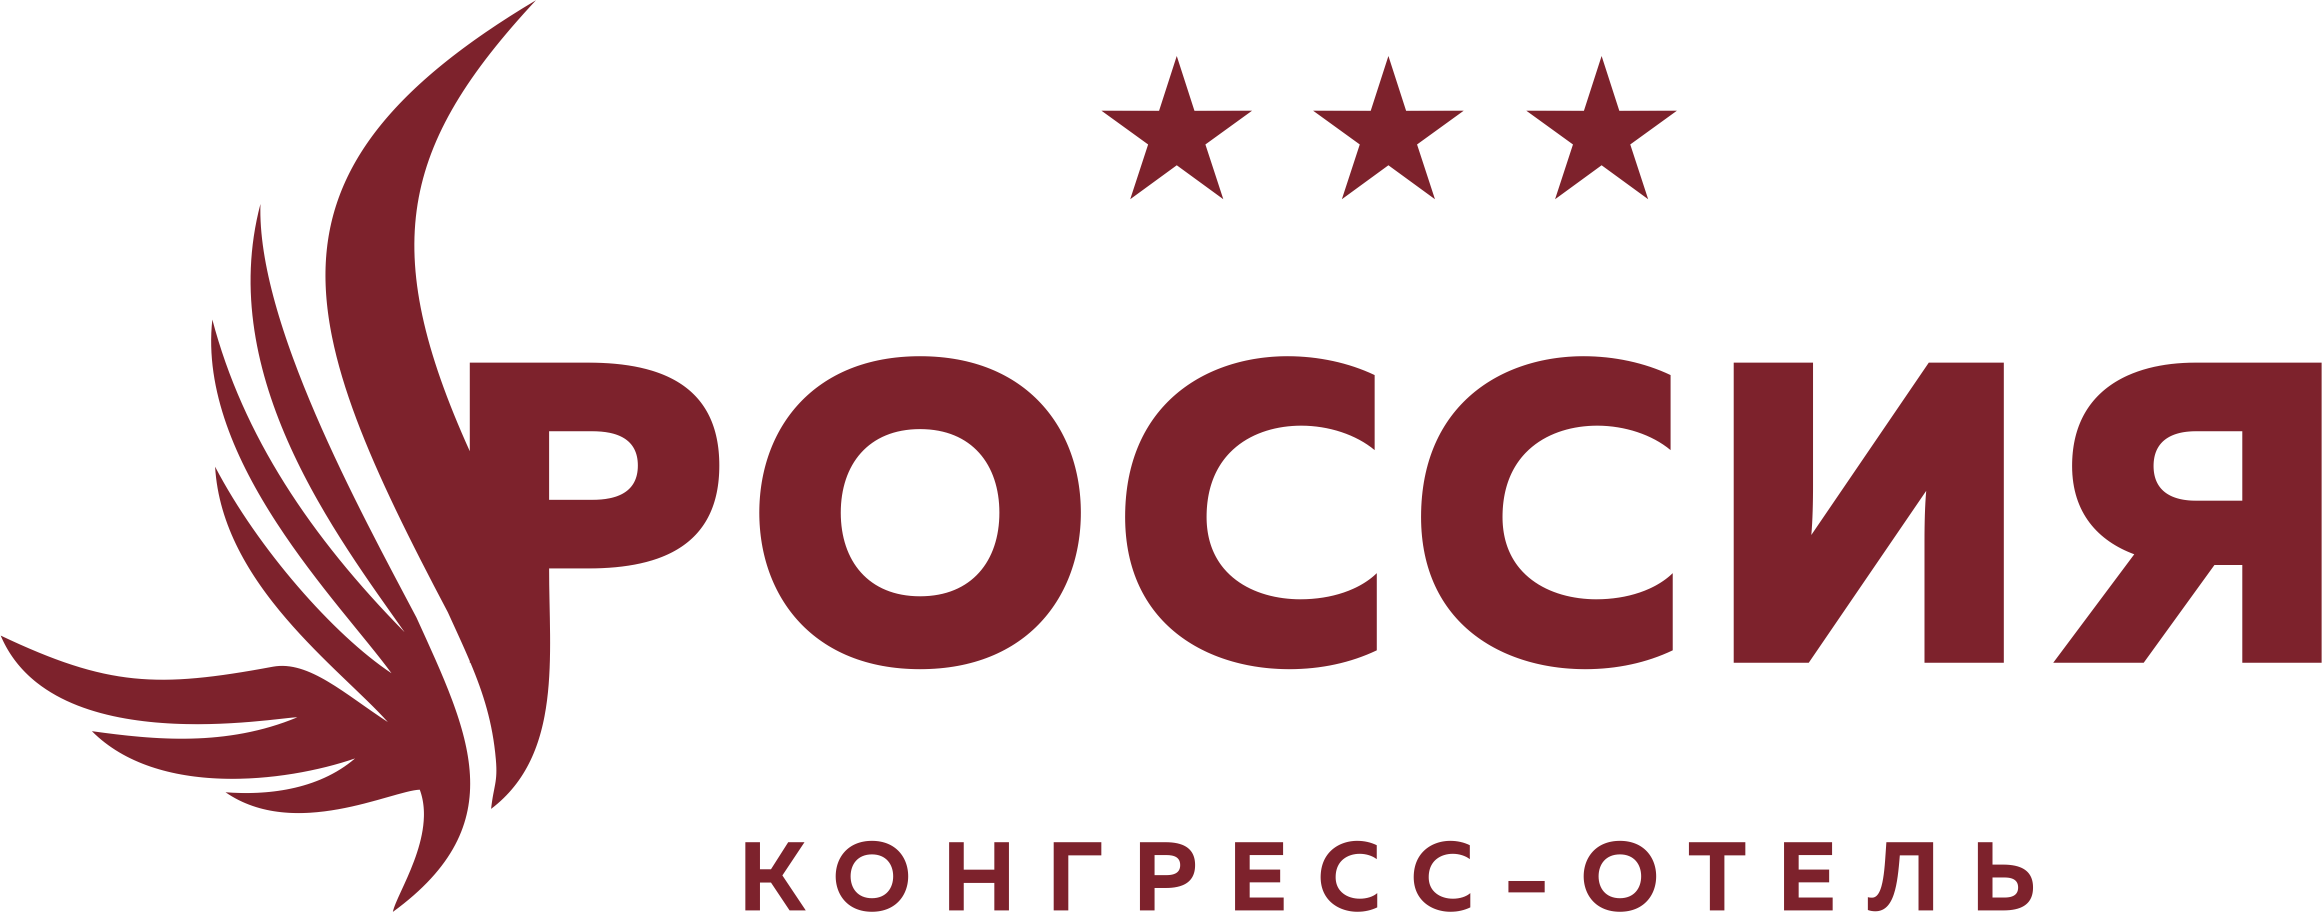 Конгресс-отель «Россия», г. Чебоксары – официальный сайт